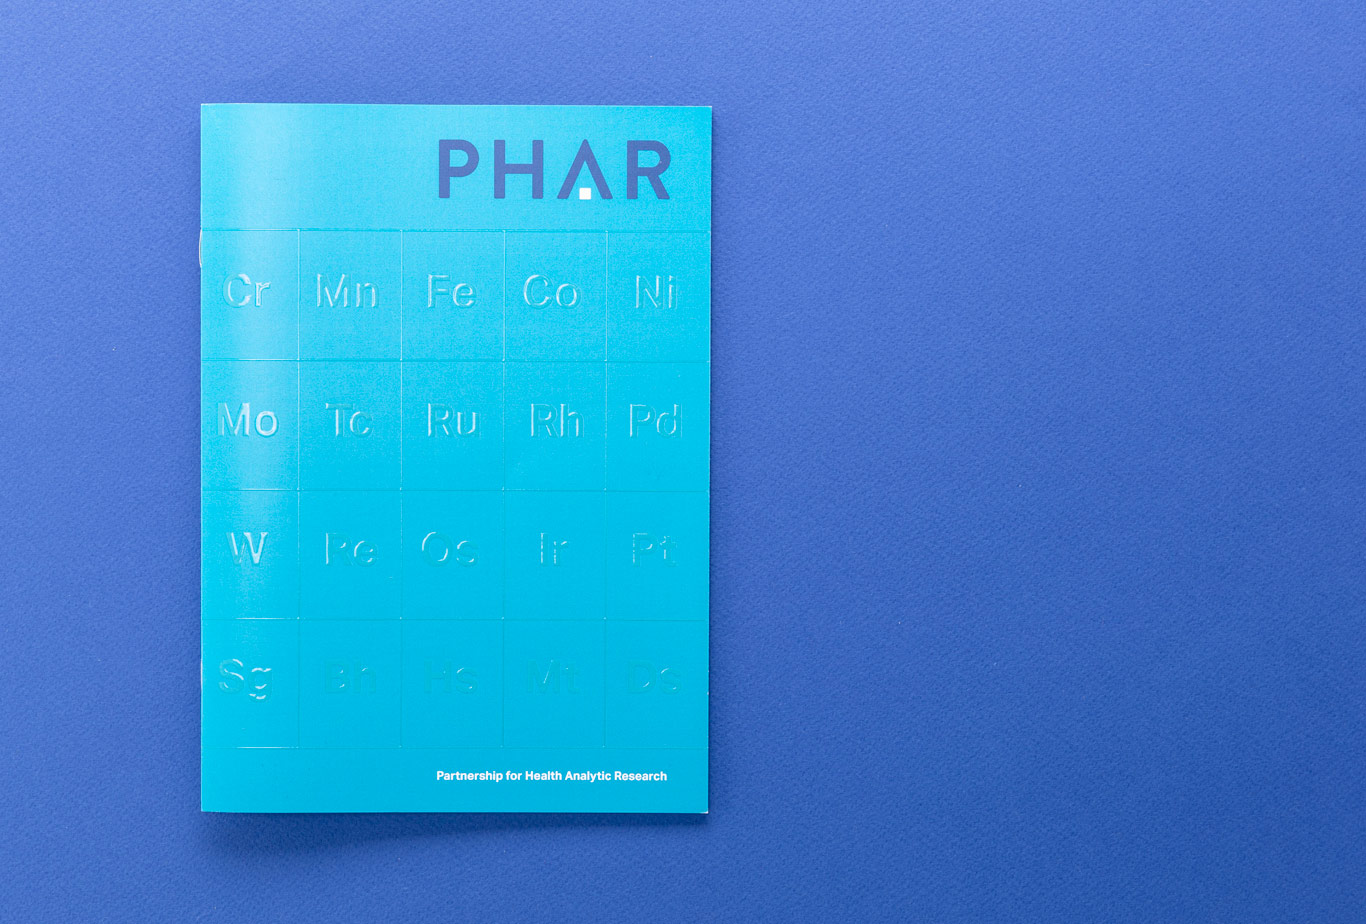 PHAR brochure cover